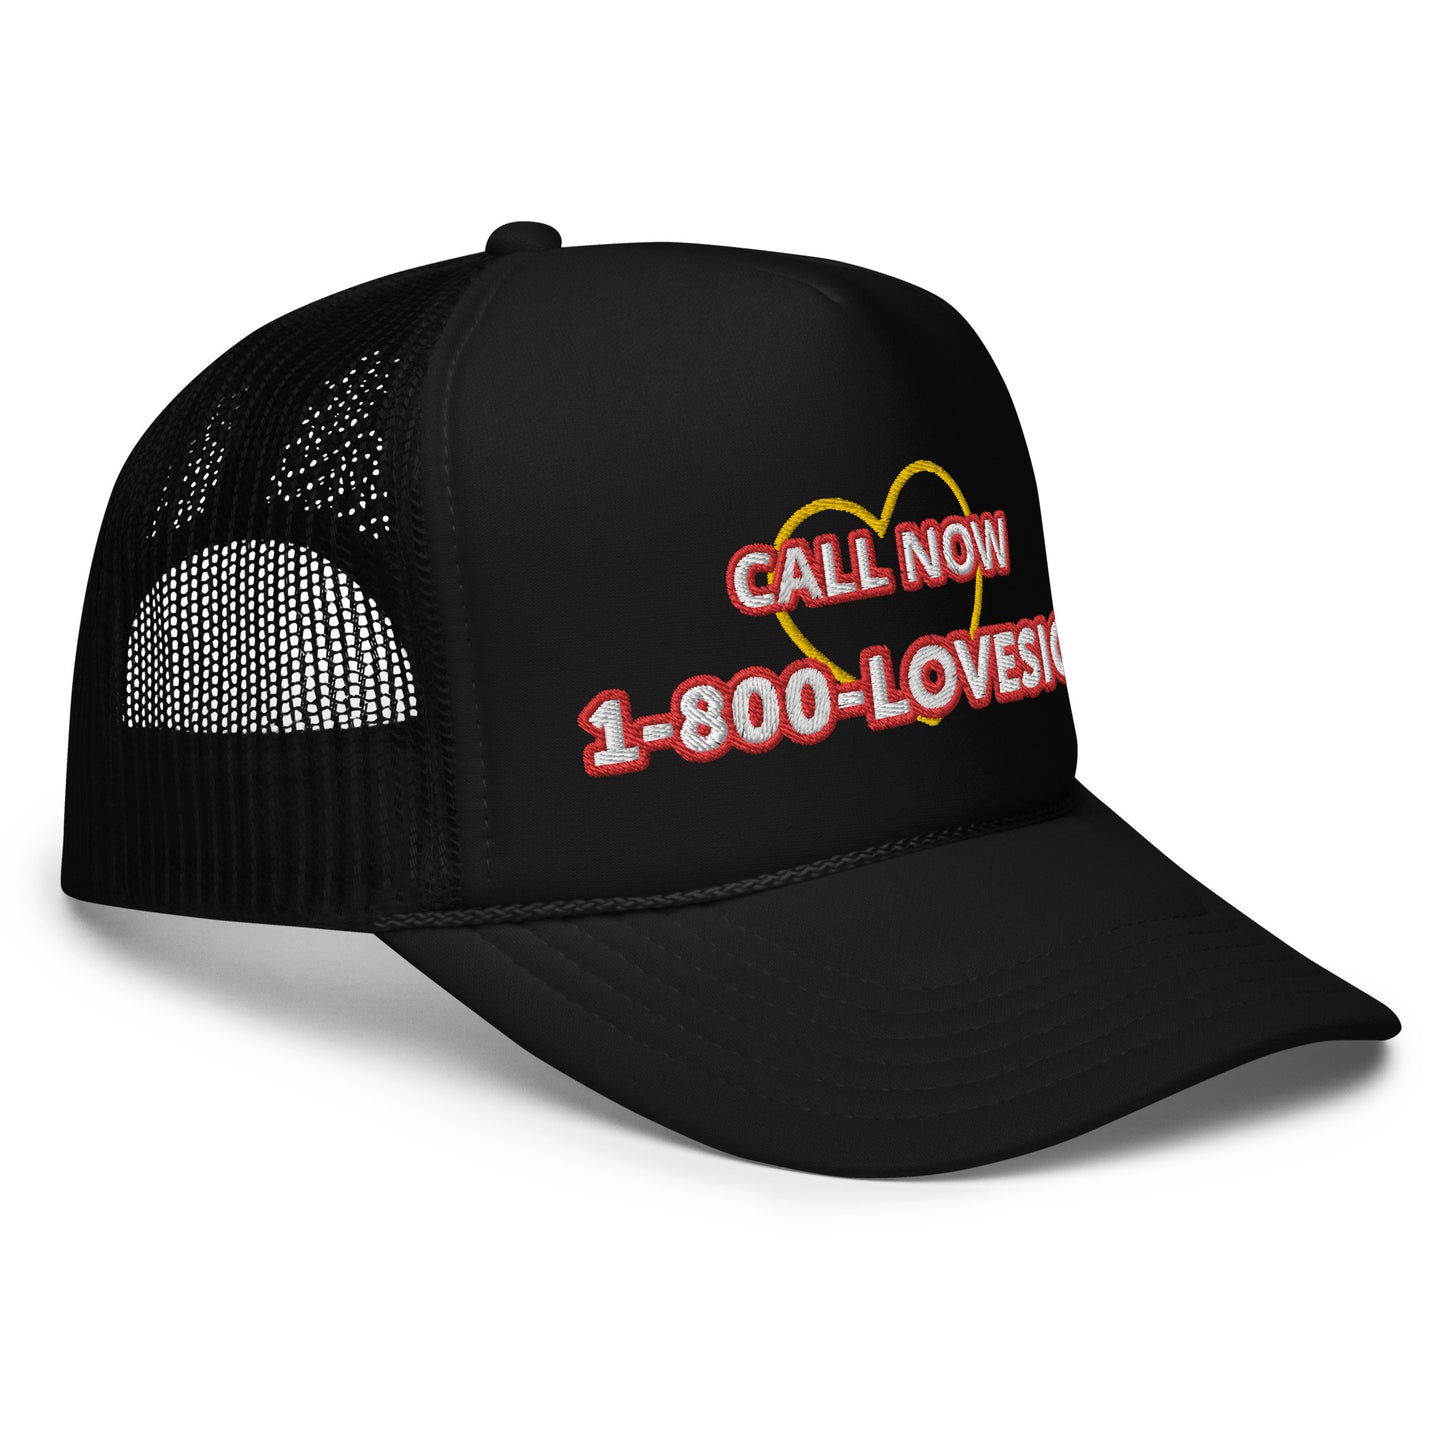 1-800-LOVESICK Foam trucker hat